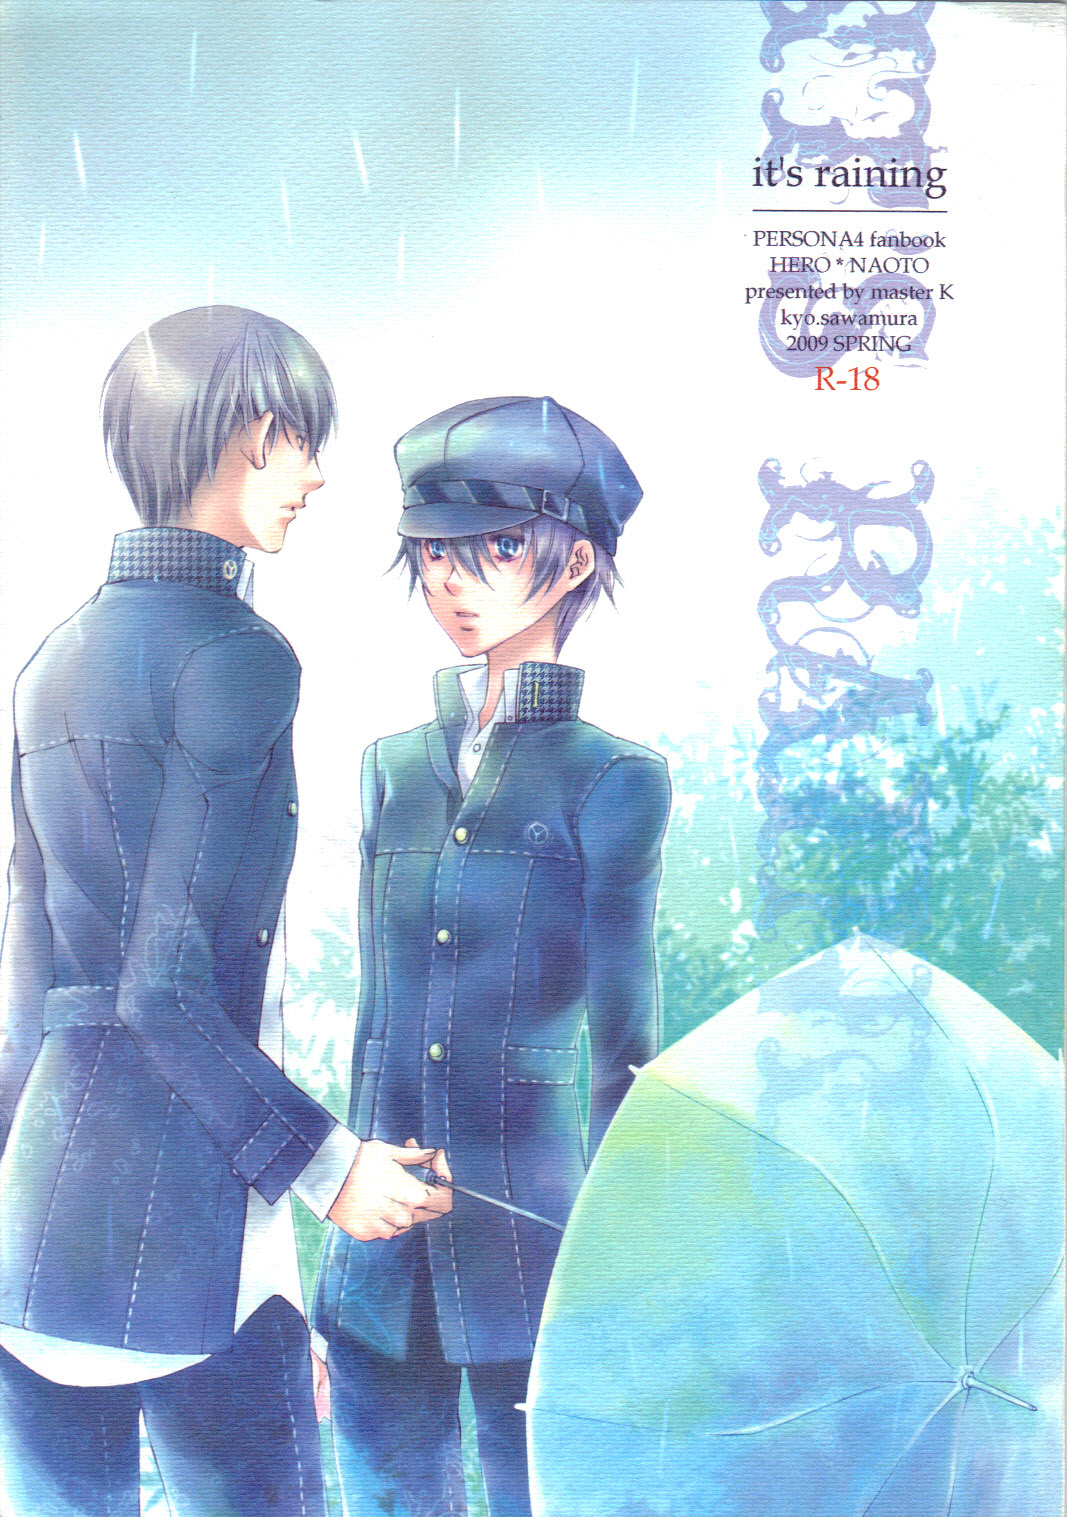 [master K (Fushou)] it's raining (Persona 4) [master K (不詳)] it's raining (ペルソナ4)